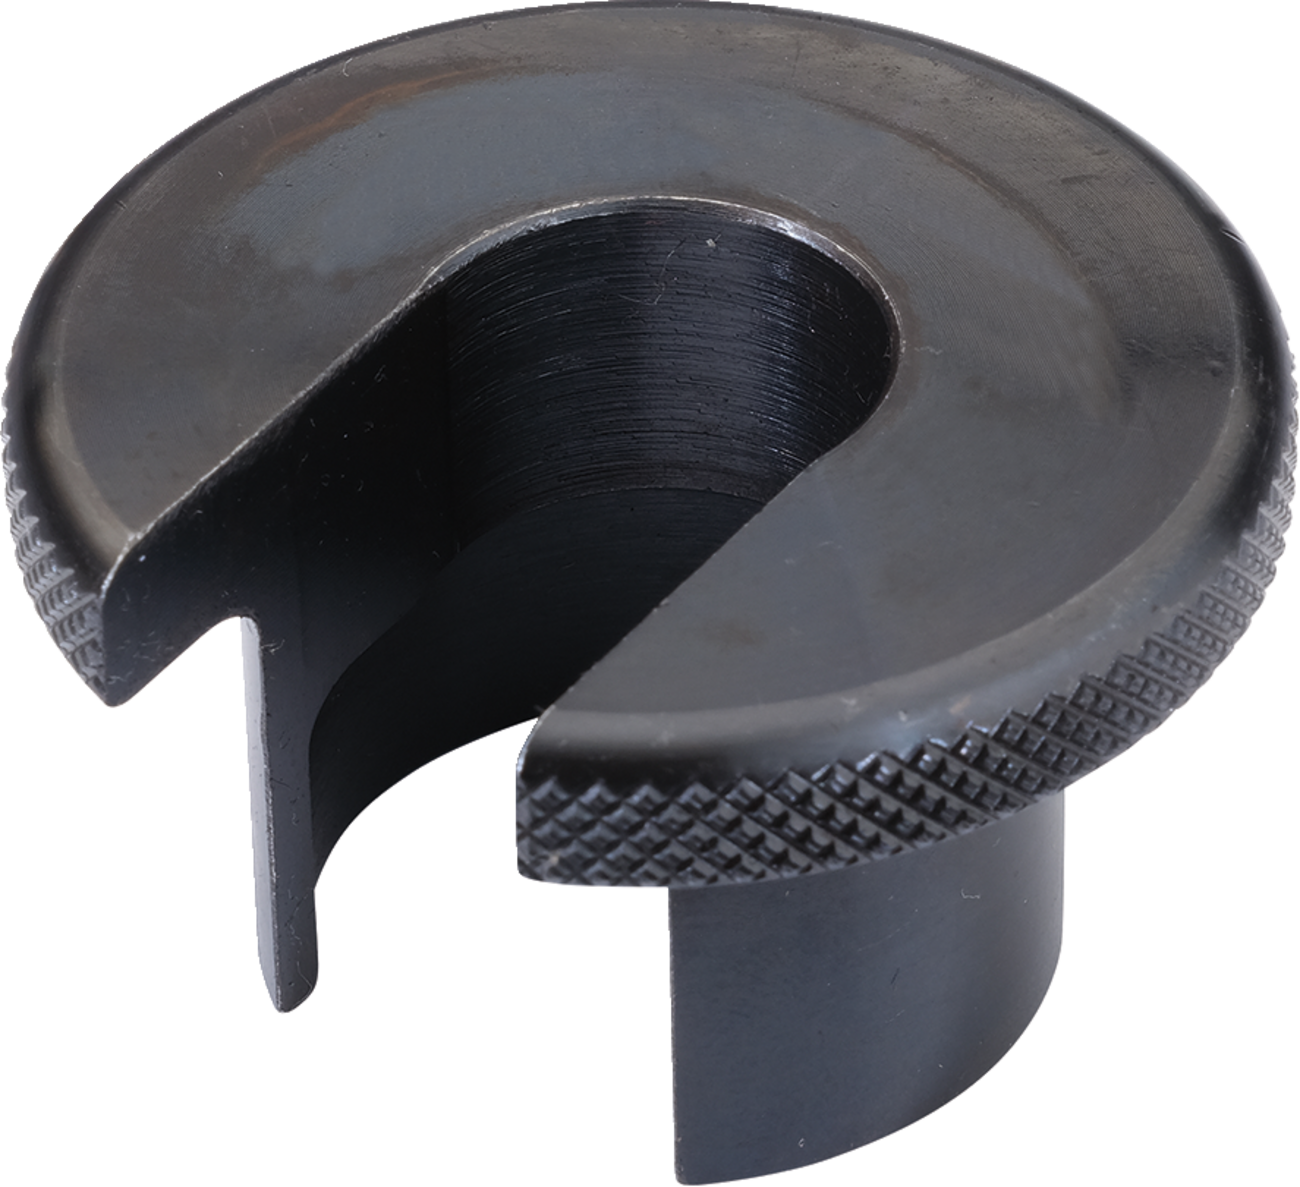 MOOSE RACING Shock Seal Head Tool - Black - 50 mm 394-6902